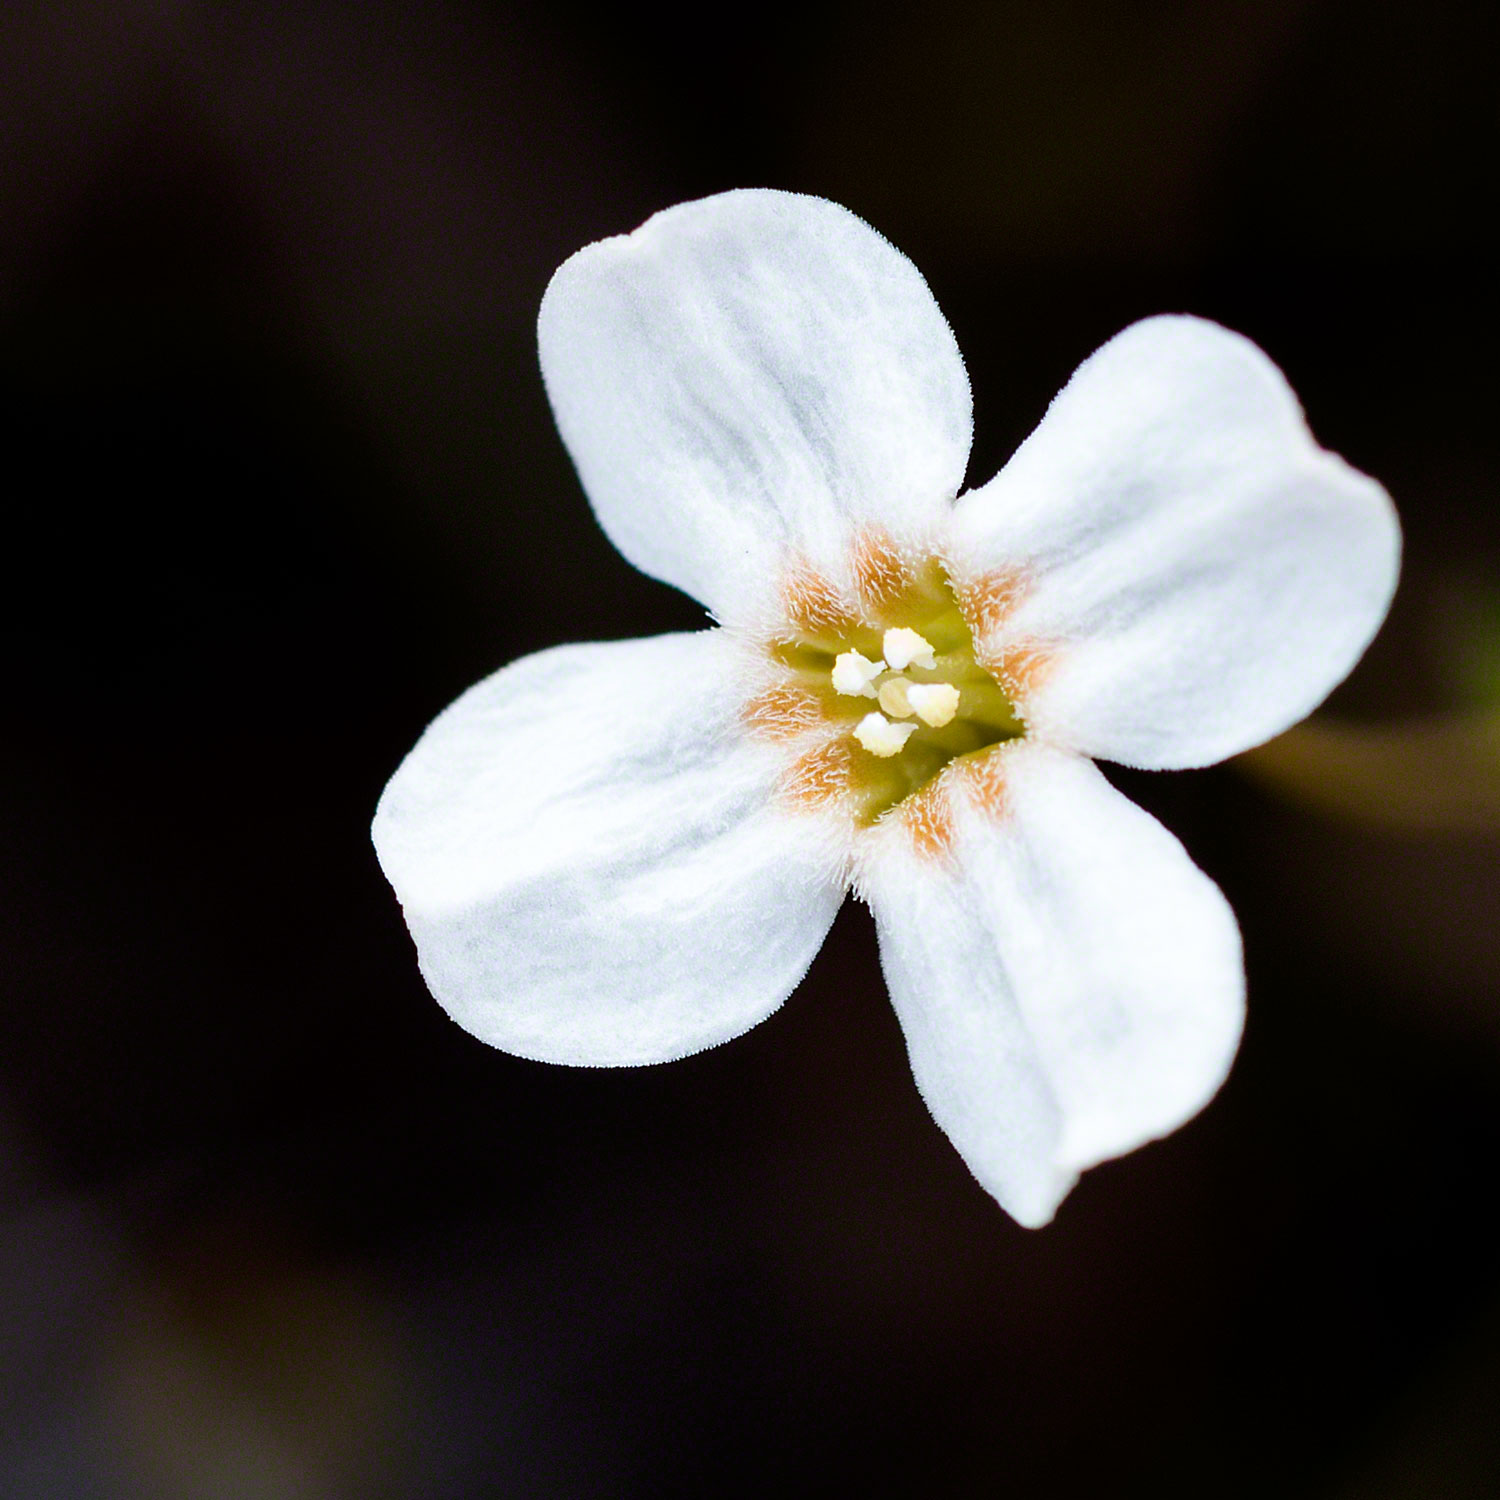 Warren-Hinder-Unknown-Beautiful-flower.jpg